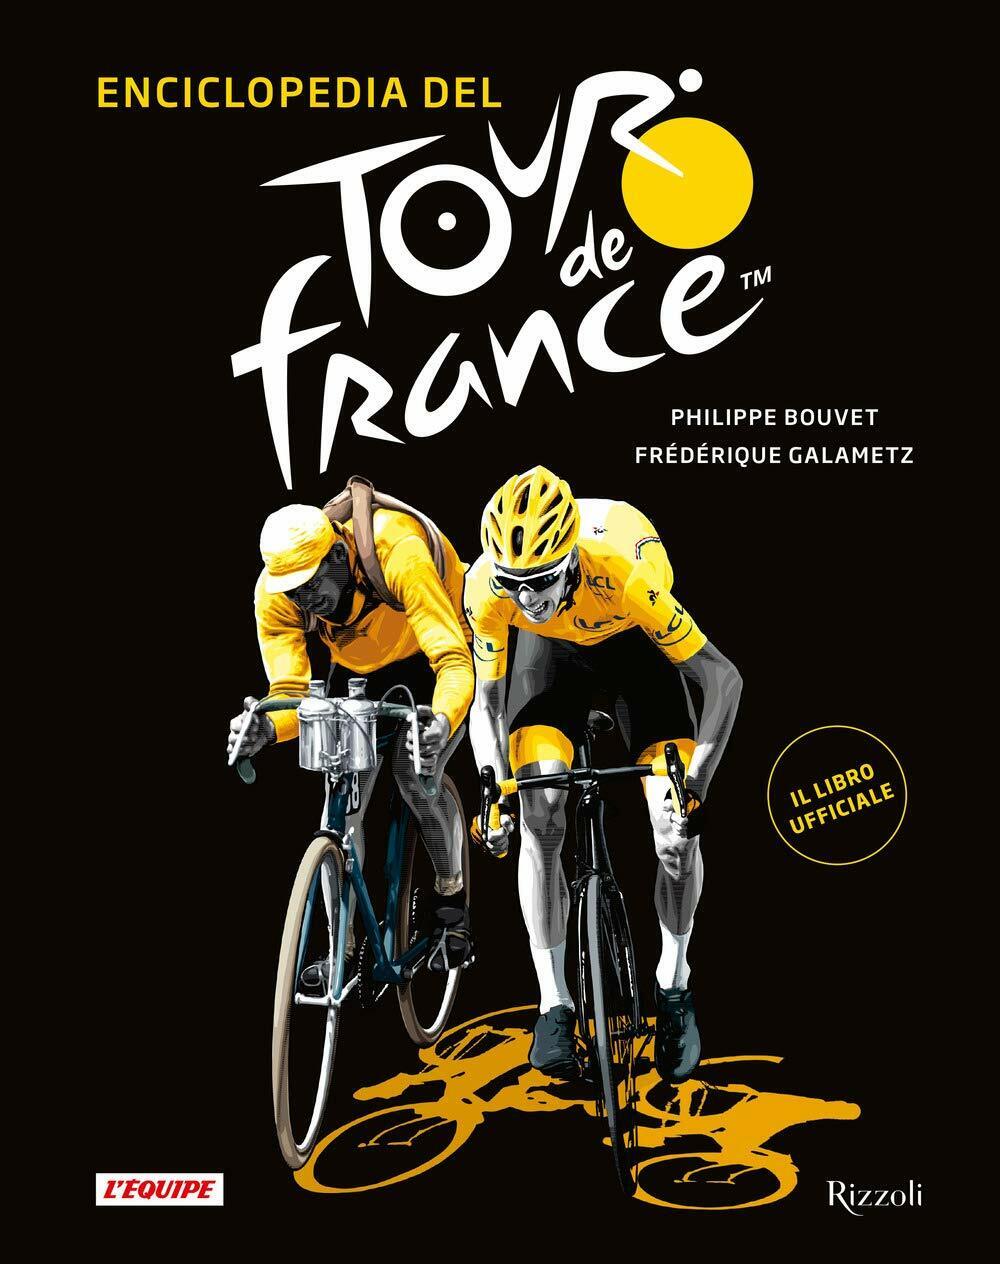 Enciclopedia del Tour de France - Philippe Bouvet, Fr?d?rique Galametz - 2019